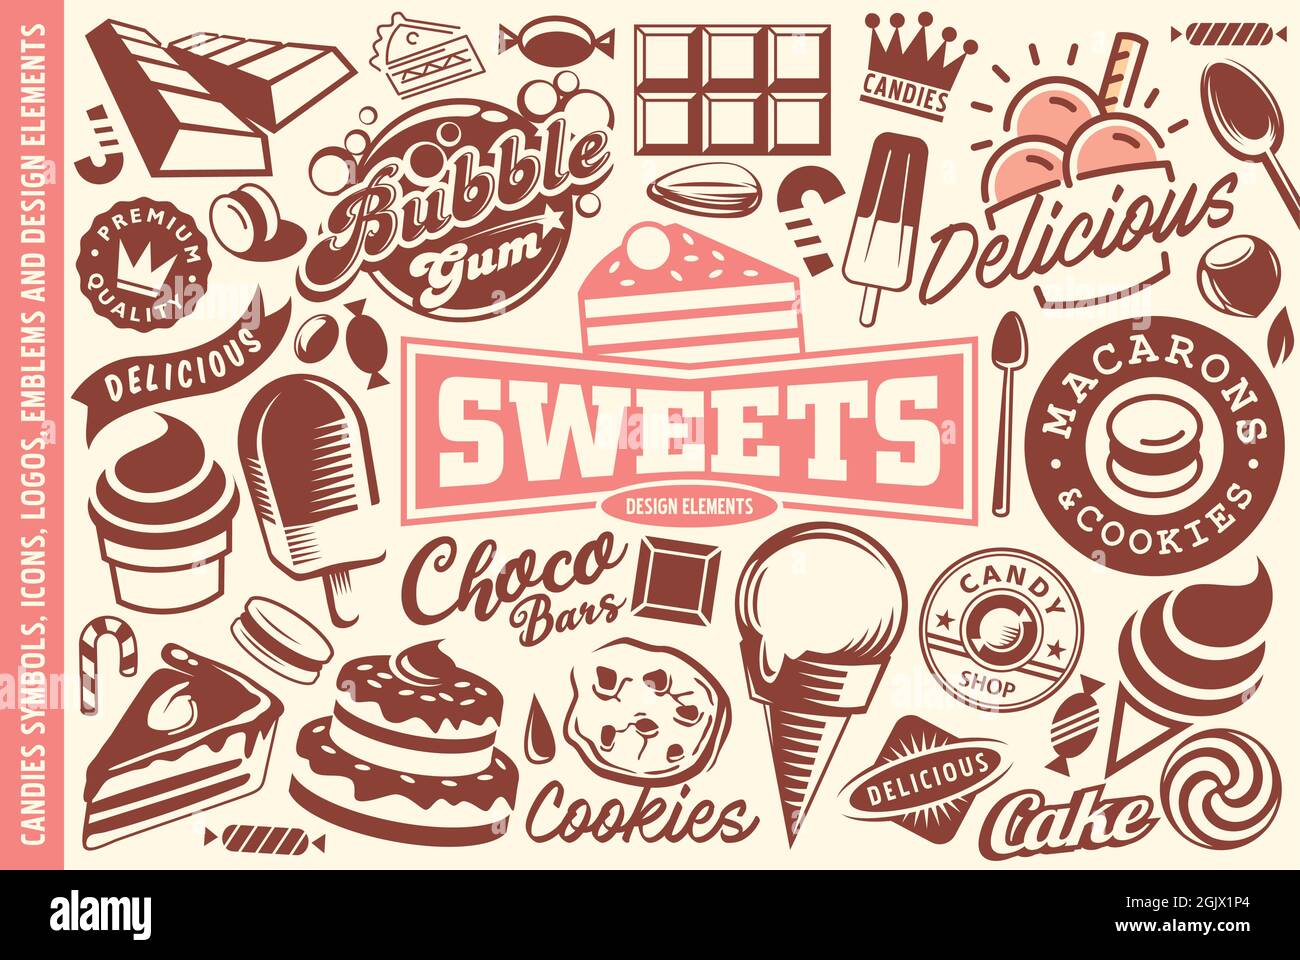 Süßigkeiten, Desserts. Eis, Kuchen, Süßigkeiten und Cookies Sammlung von Logos, Grafiken, Symbole, Embleme Symbole und Design-Elemente. Vektor für süße Lebensmittel Stock Vektor